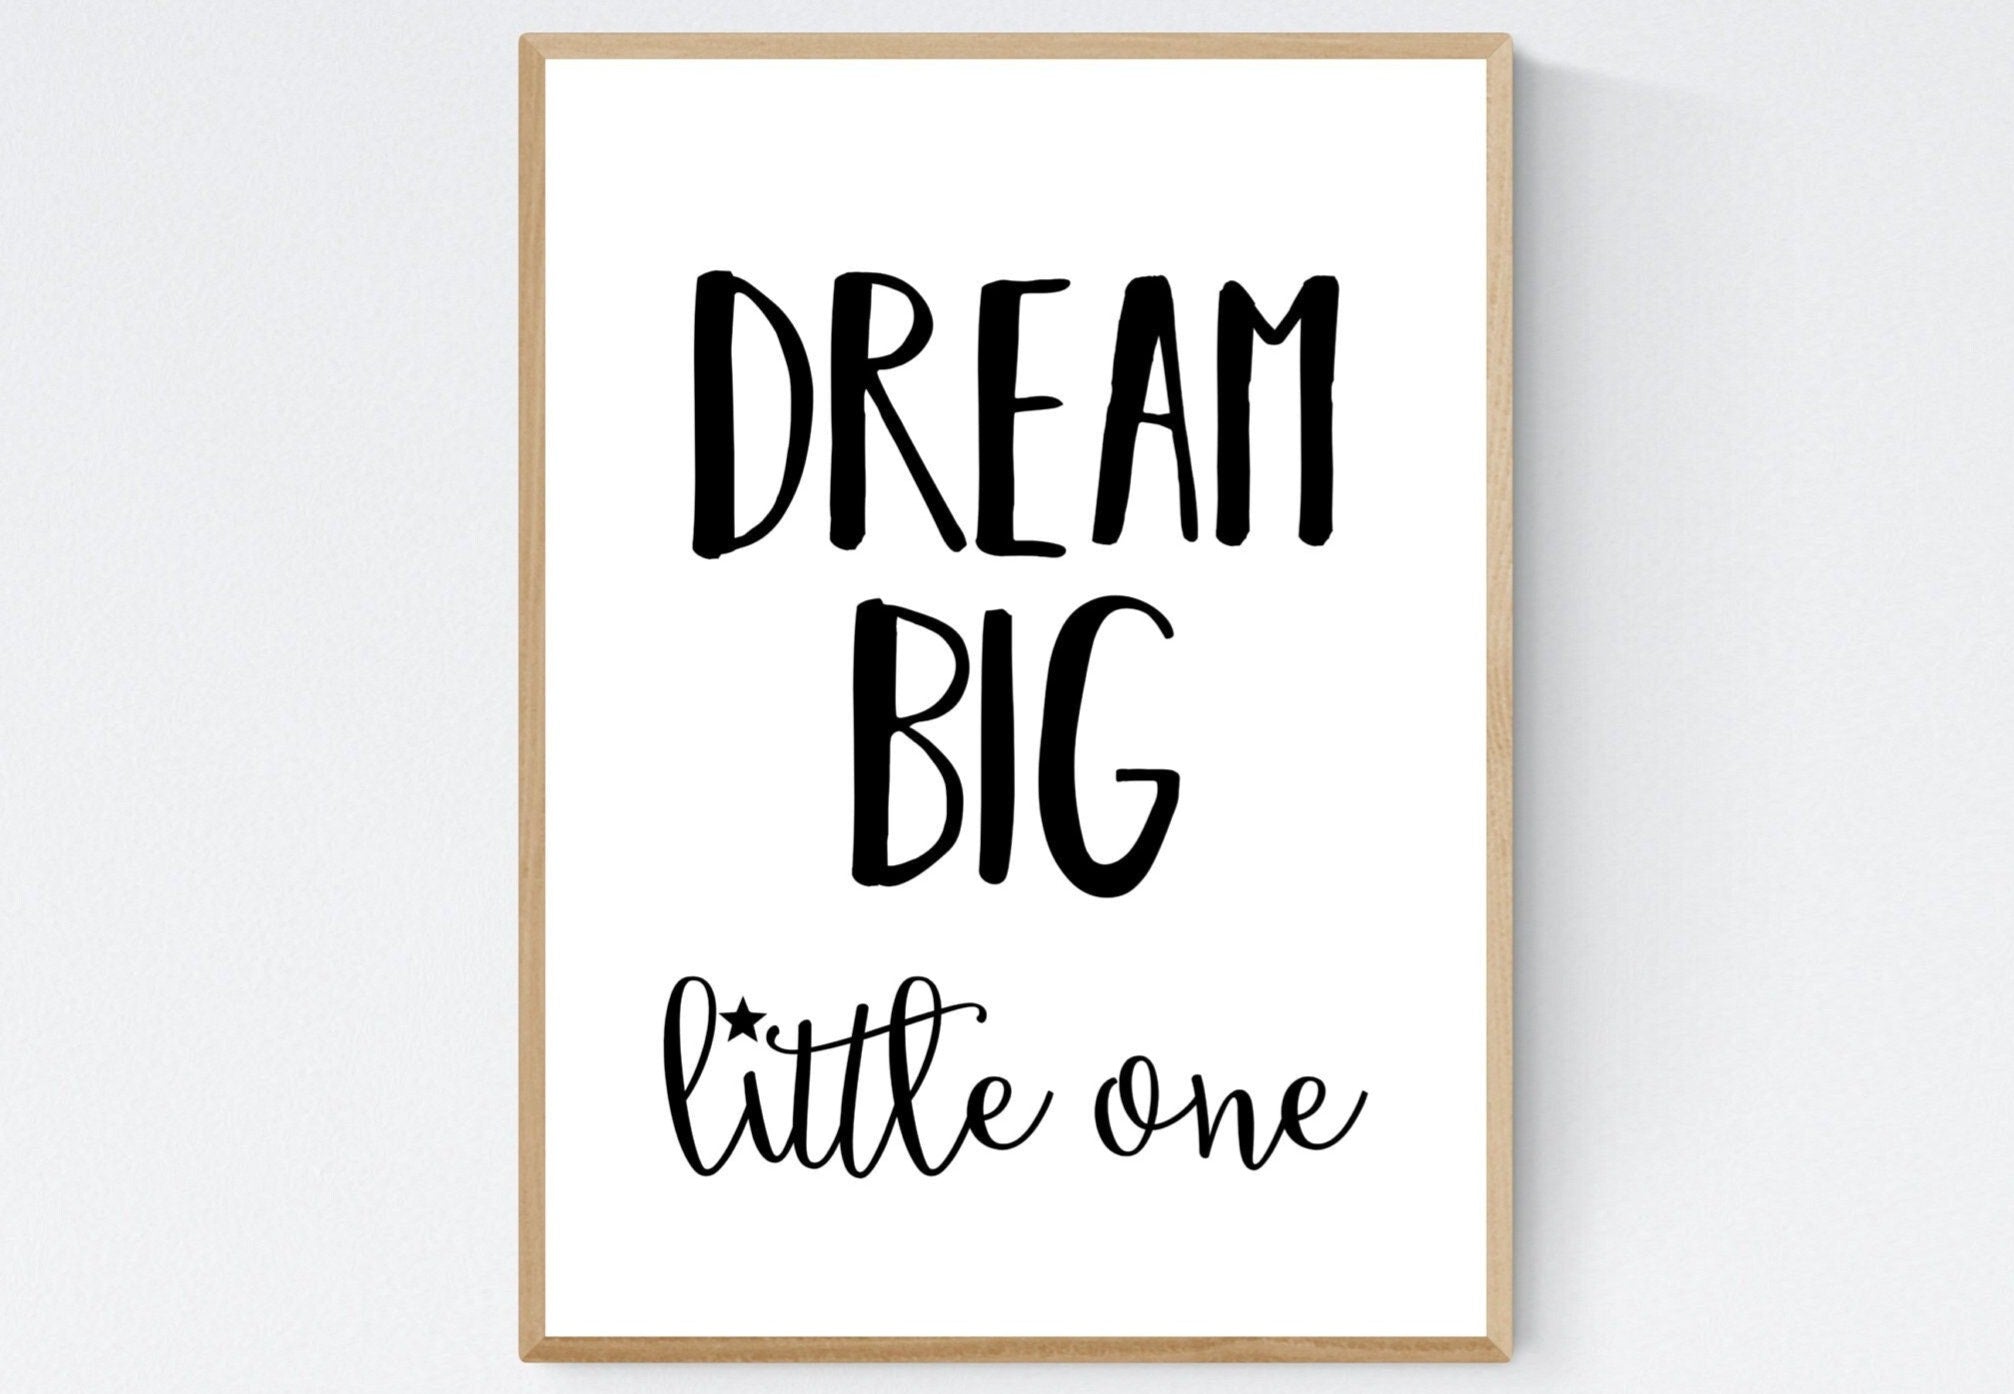 Poster Babyzimmer Kinderzimmer Dream Big little one  - Geschenk zur Taufe Geburt